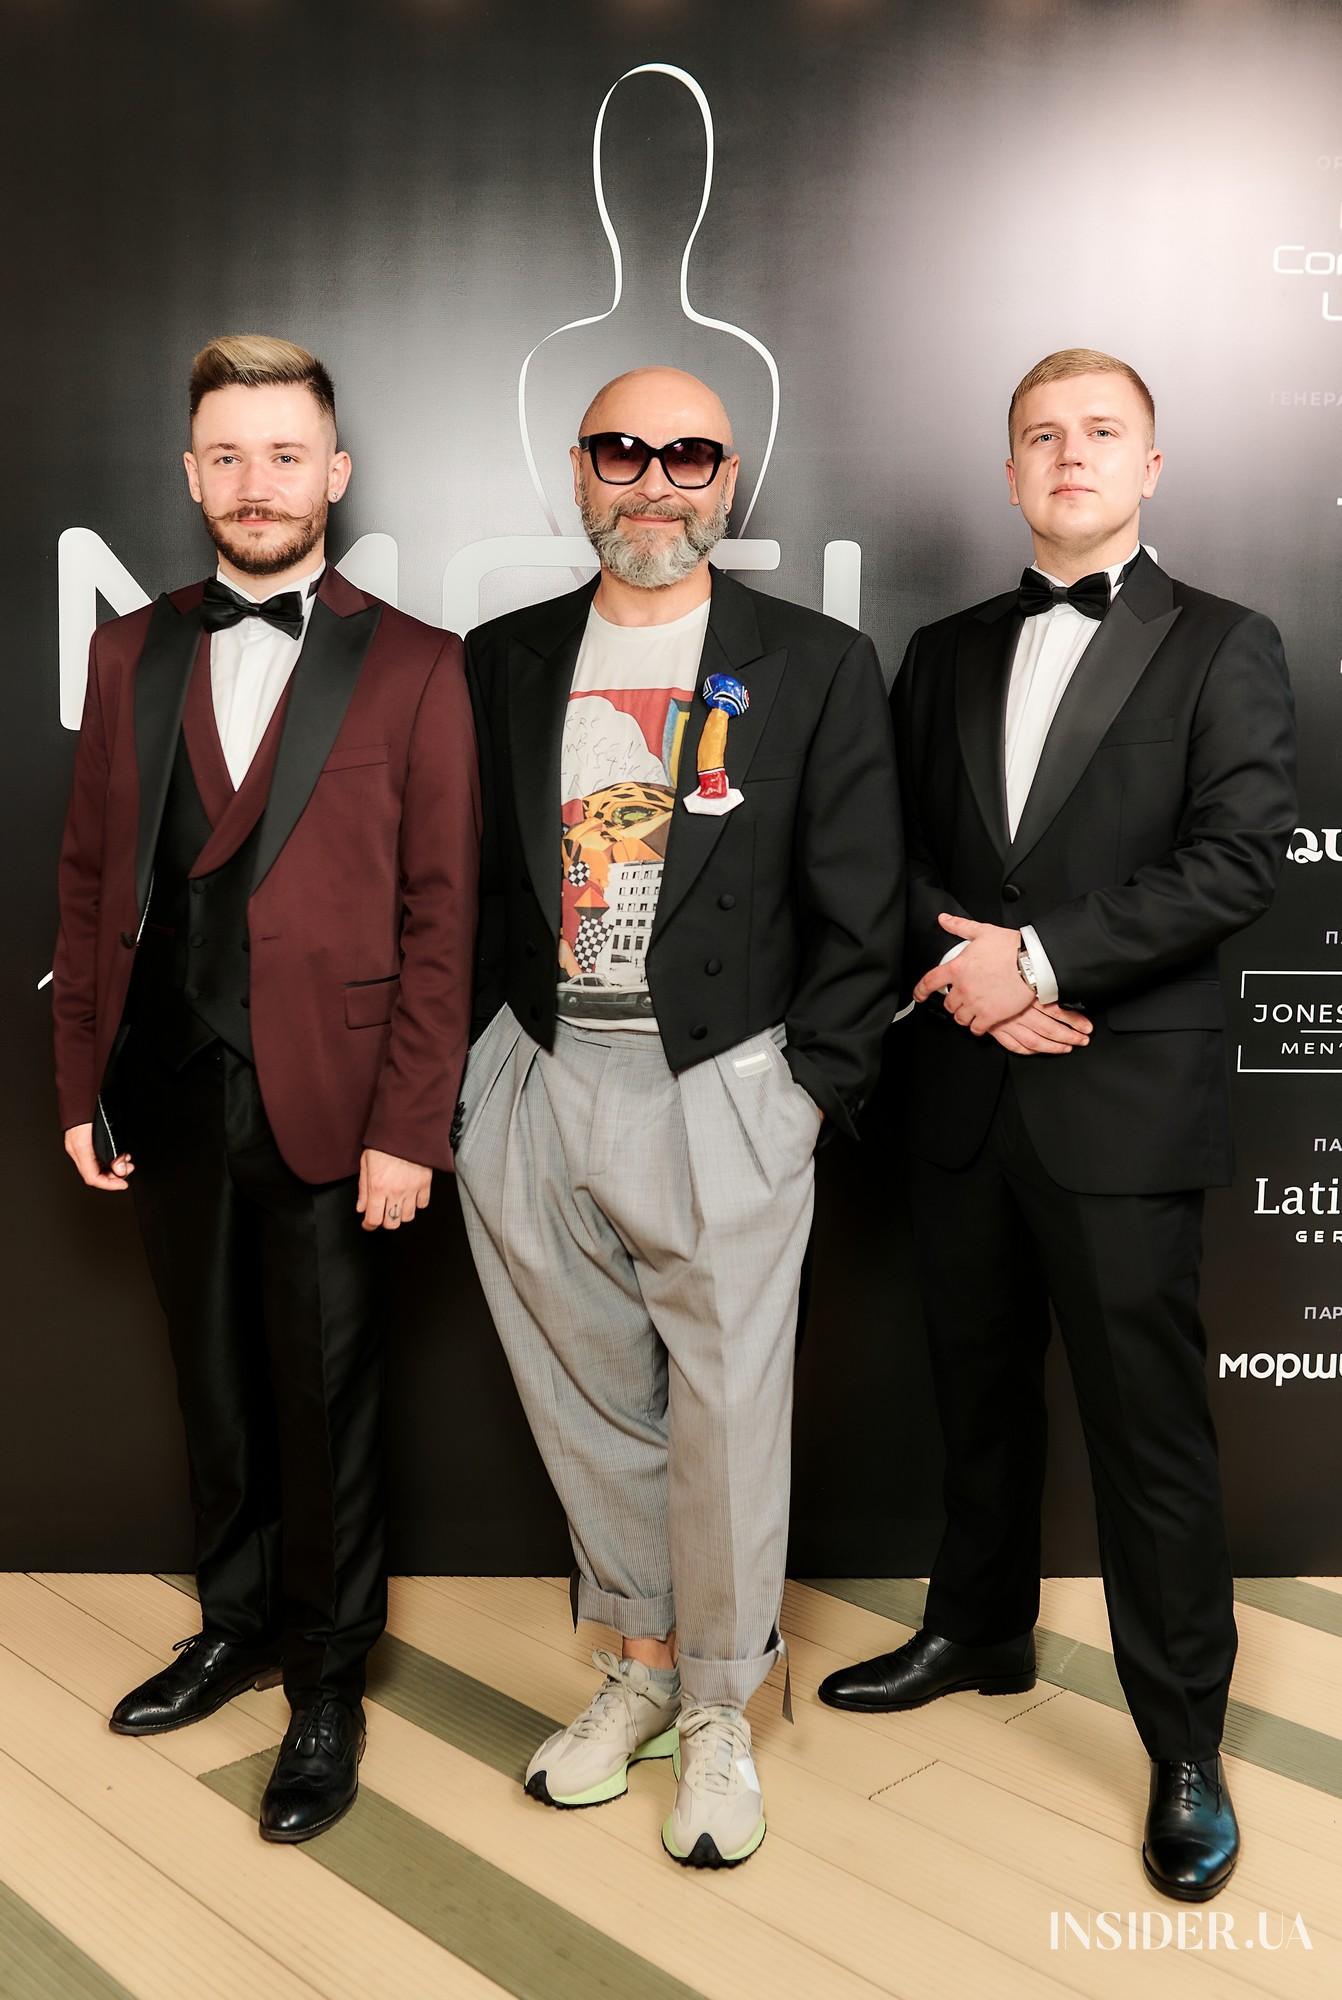 У Києві пройшла церемонія вручення премії в сфері моделінга MCU Awards